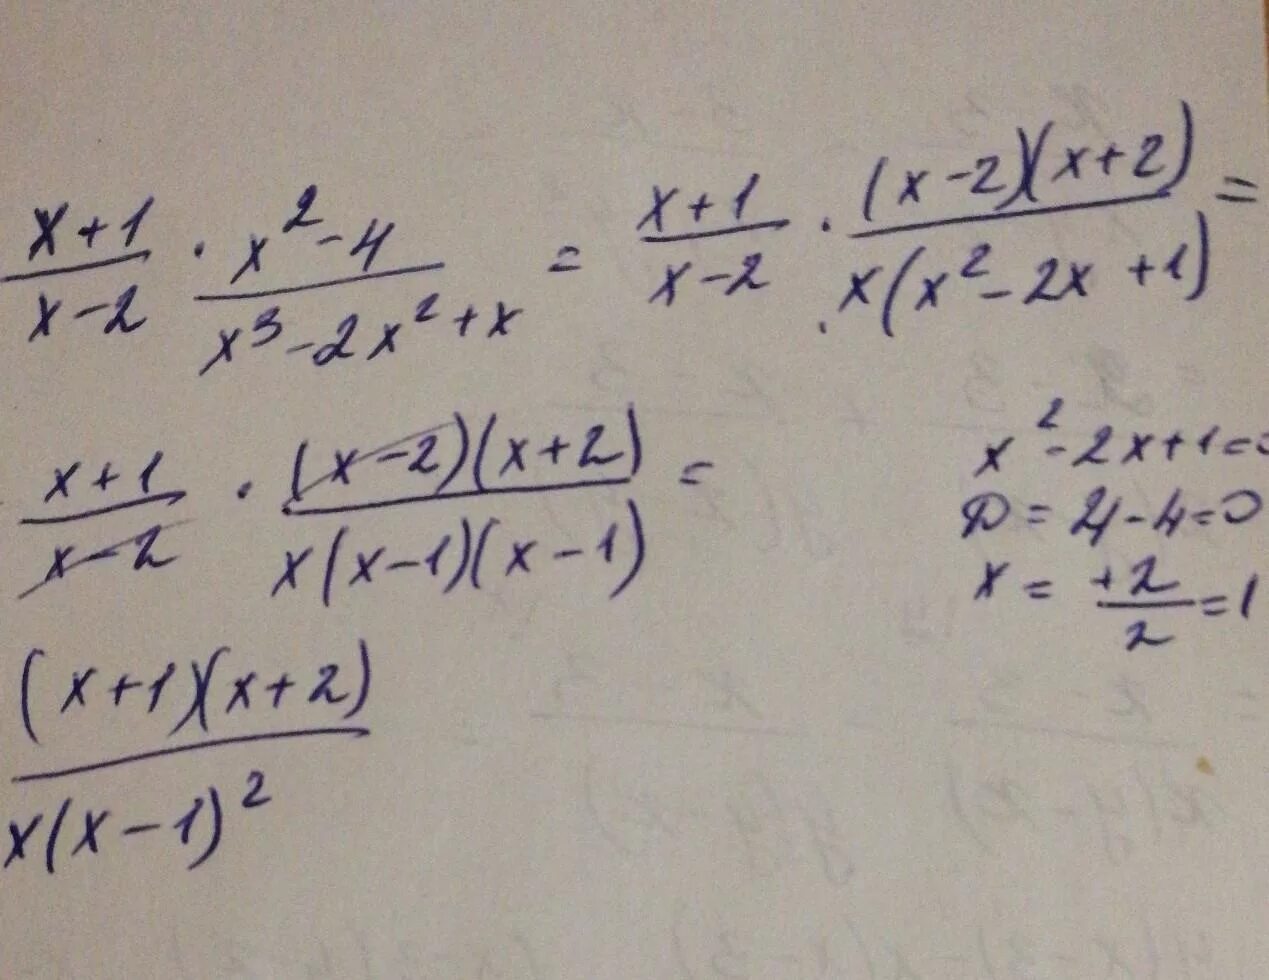 3 х 1 27 x 1. Упростите выражение (x-1) (x 2+1) +(3-x) (9+3x+x 2). Упростите выражение x2/x2-1 x/x+1. X*(X^2+X)+(-X^2-X-1) упростите. Упростить (x+1)(x+2).